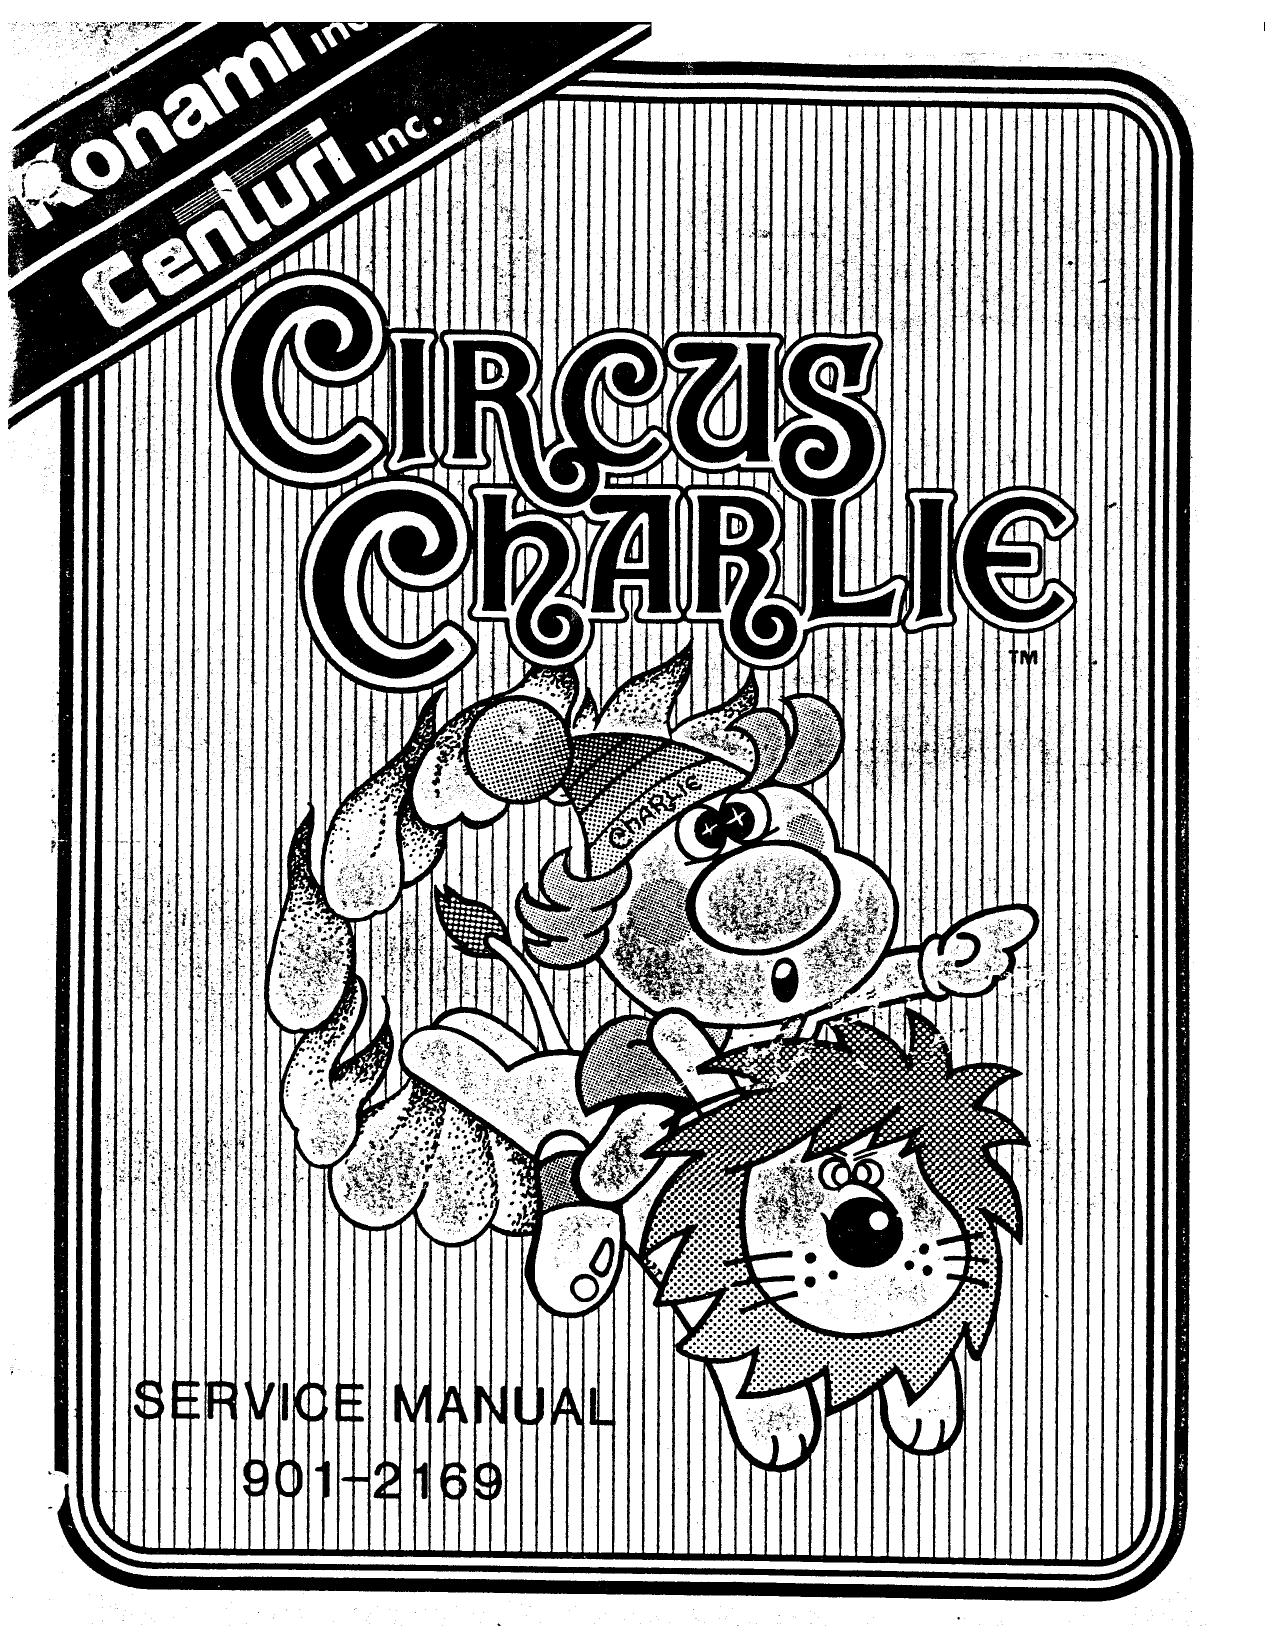 CircusCharlie Manual